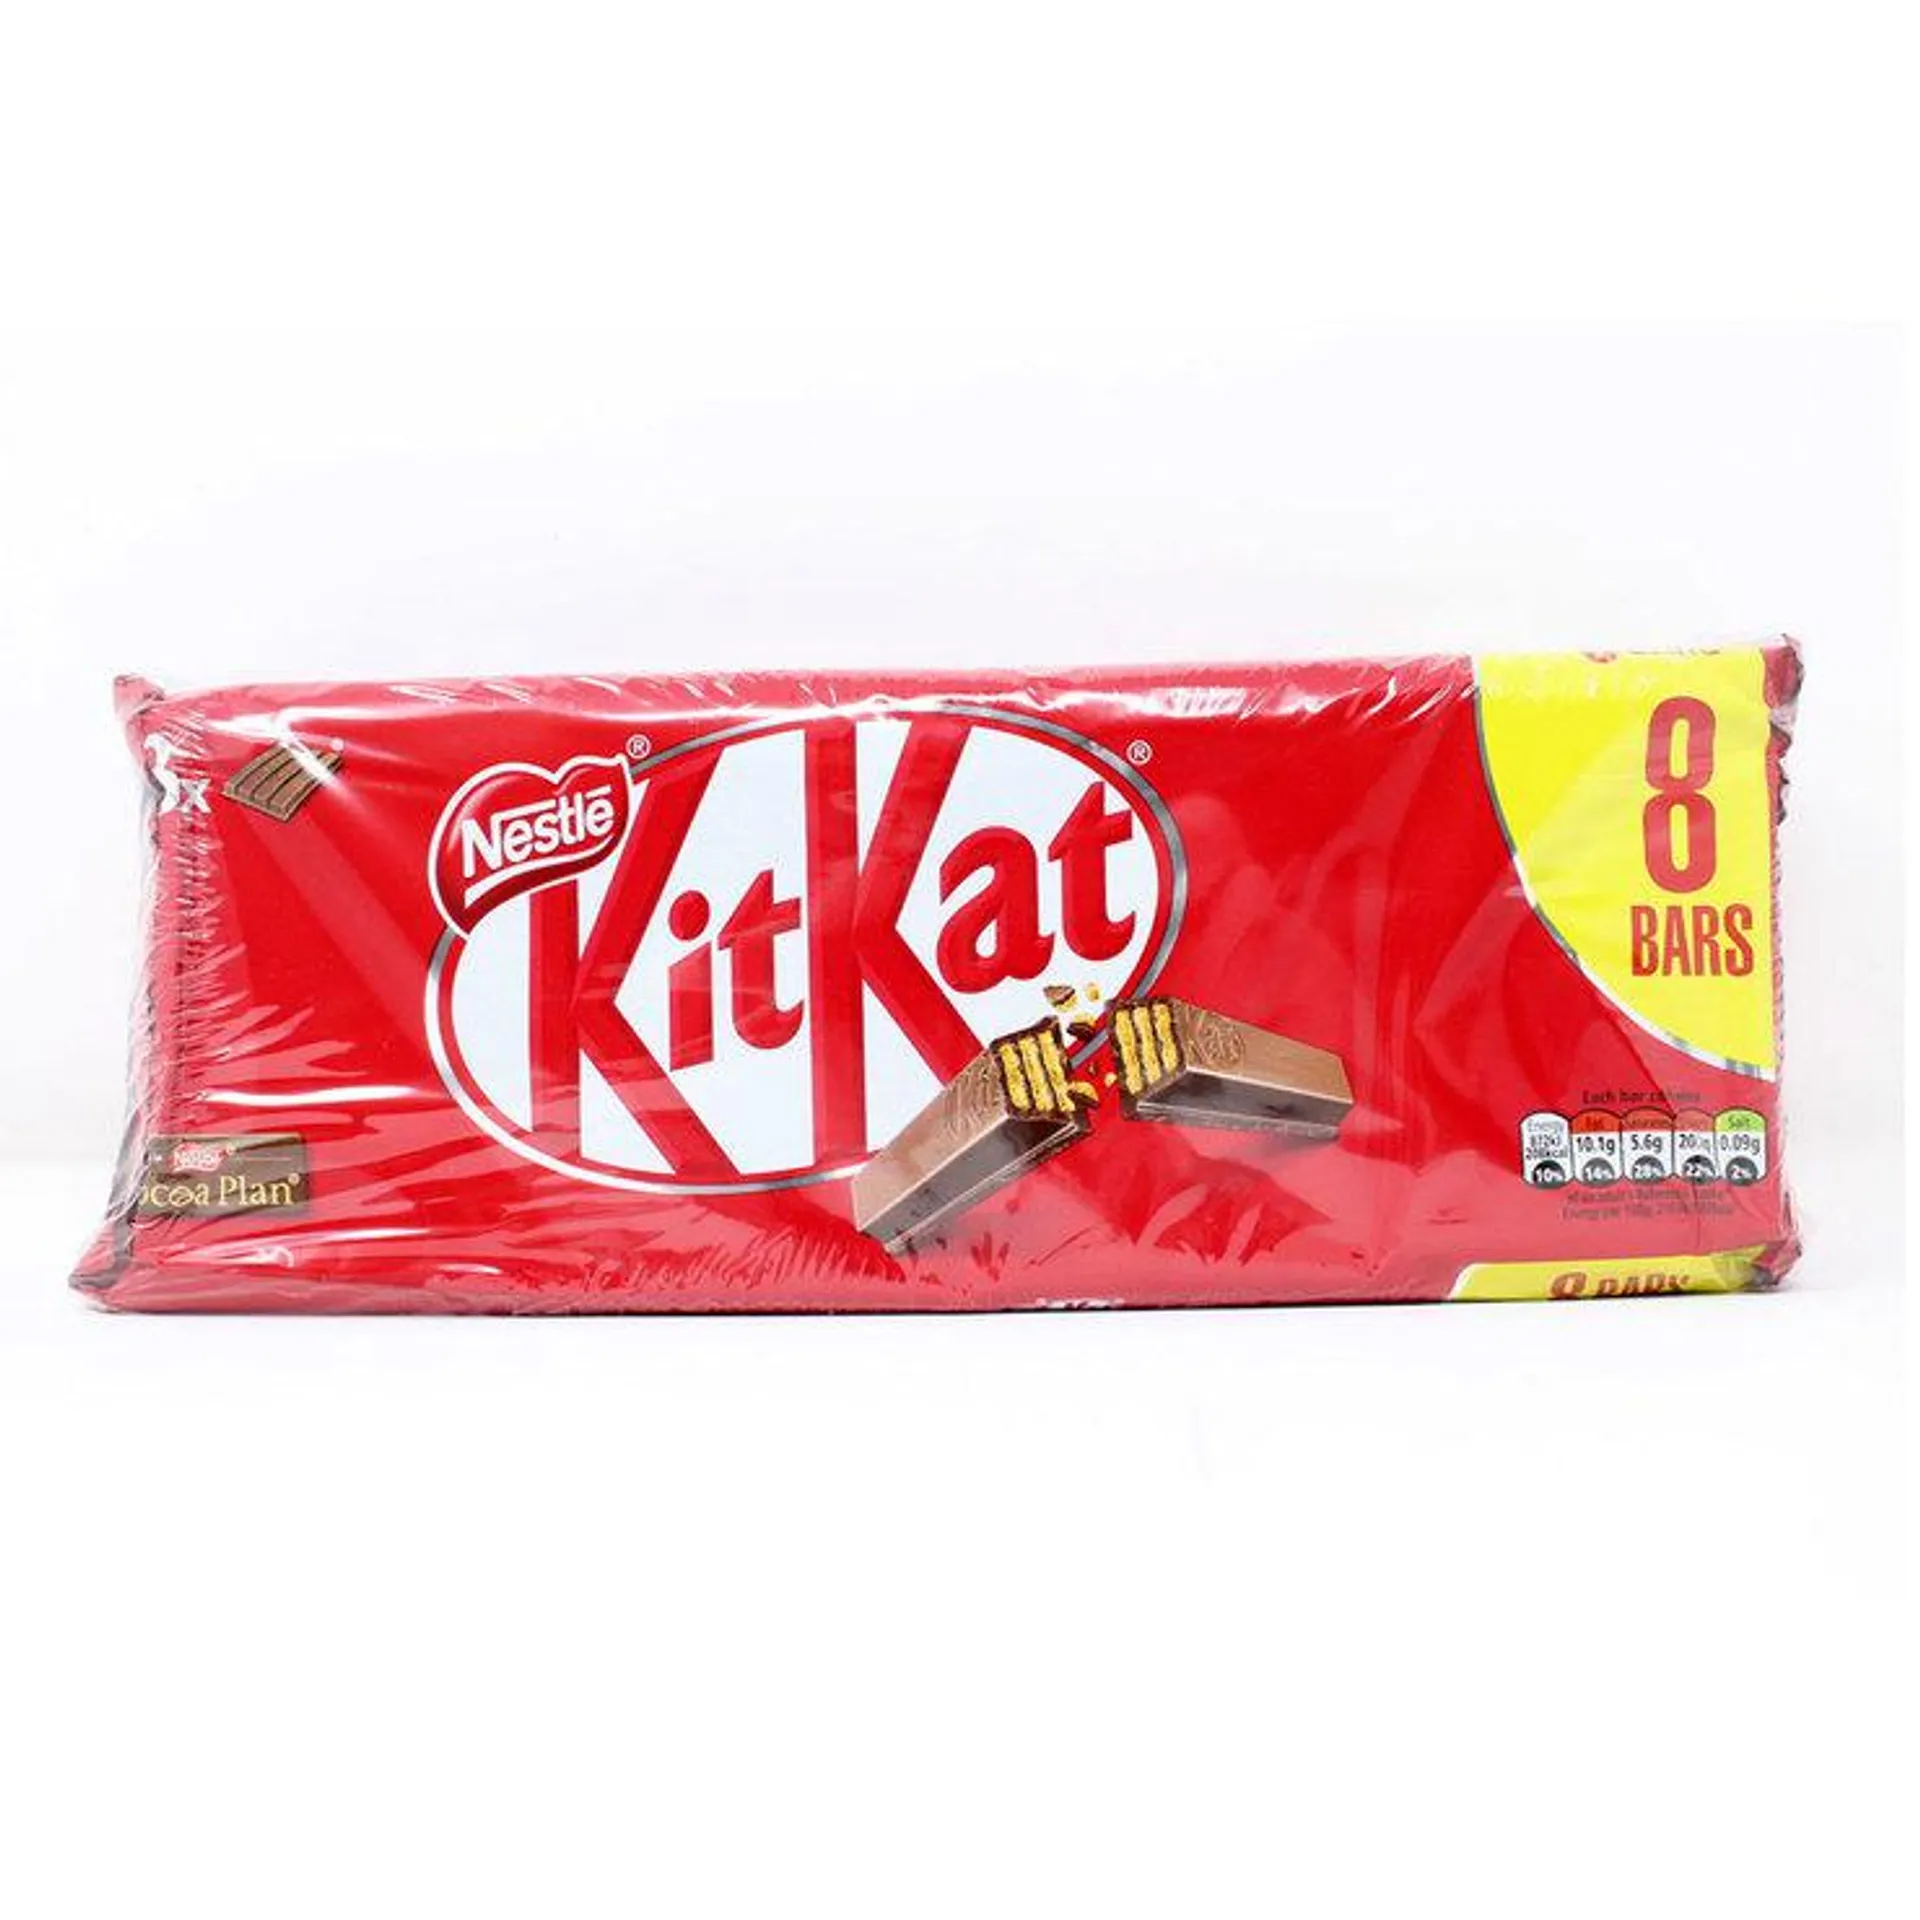 Nestle KitKat 4 Finger Milk Chocolate Bar, 3 x 8 Pack